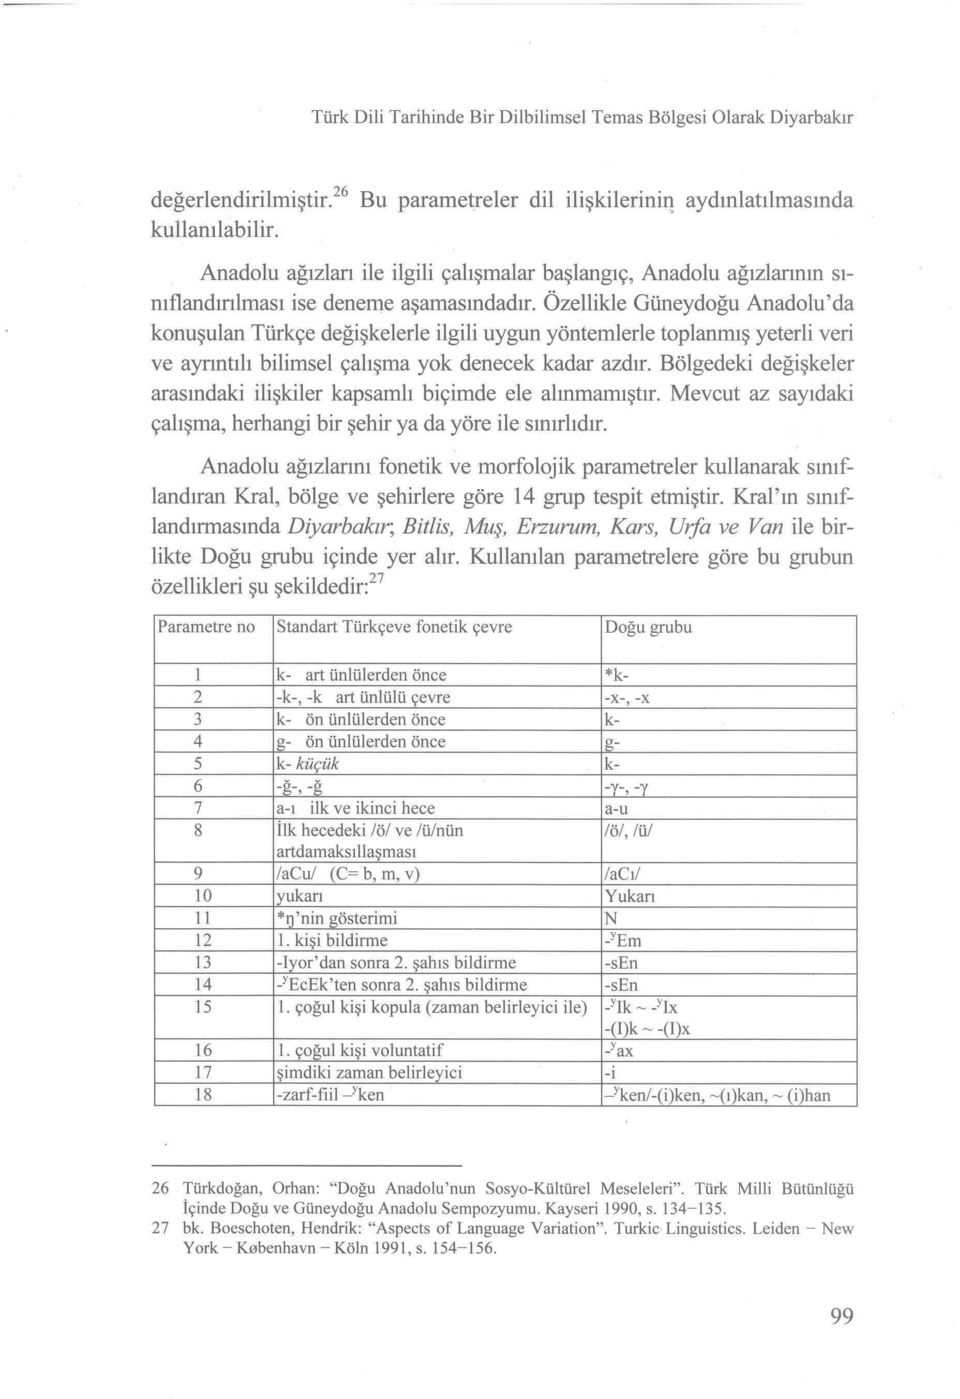 Özellikle Güneydoğu Anadolu'da konuşulan Türkçe değişkelerle ilgili uygun yöntemlerle toplanmış yeterli veri ve ayrıntılı bilimsel çalışma yok denecek kadar azdır.